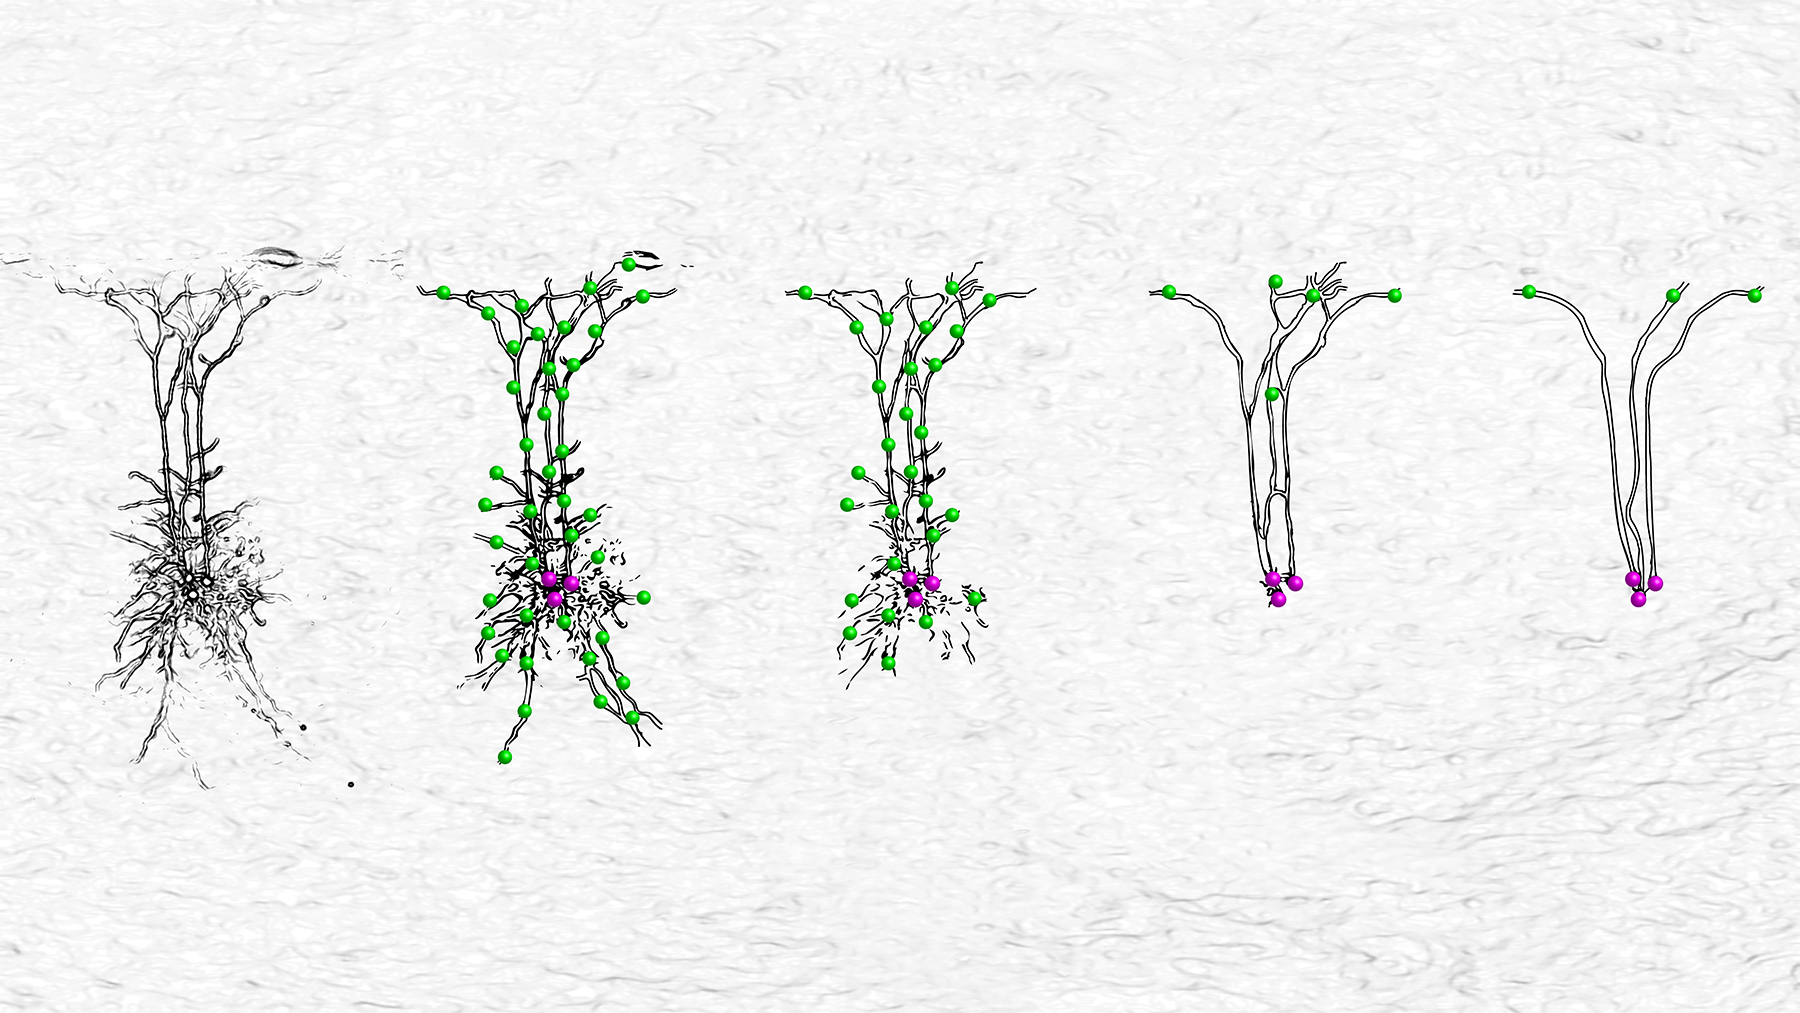 Von komplex zu abstrakt: die faszinierende baumähnliche Struktur von Dendriten kann in Modellen nun verschieden skaliert werden. © eLife